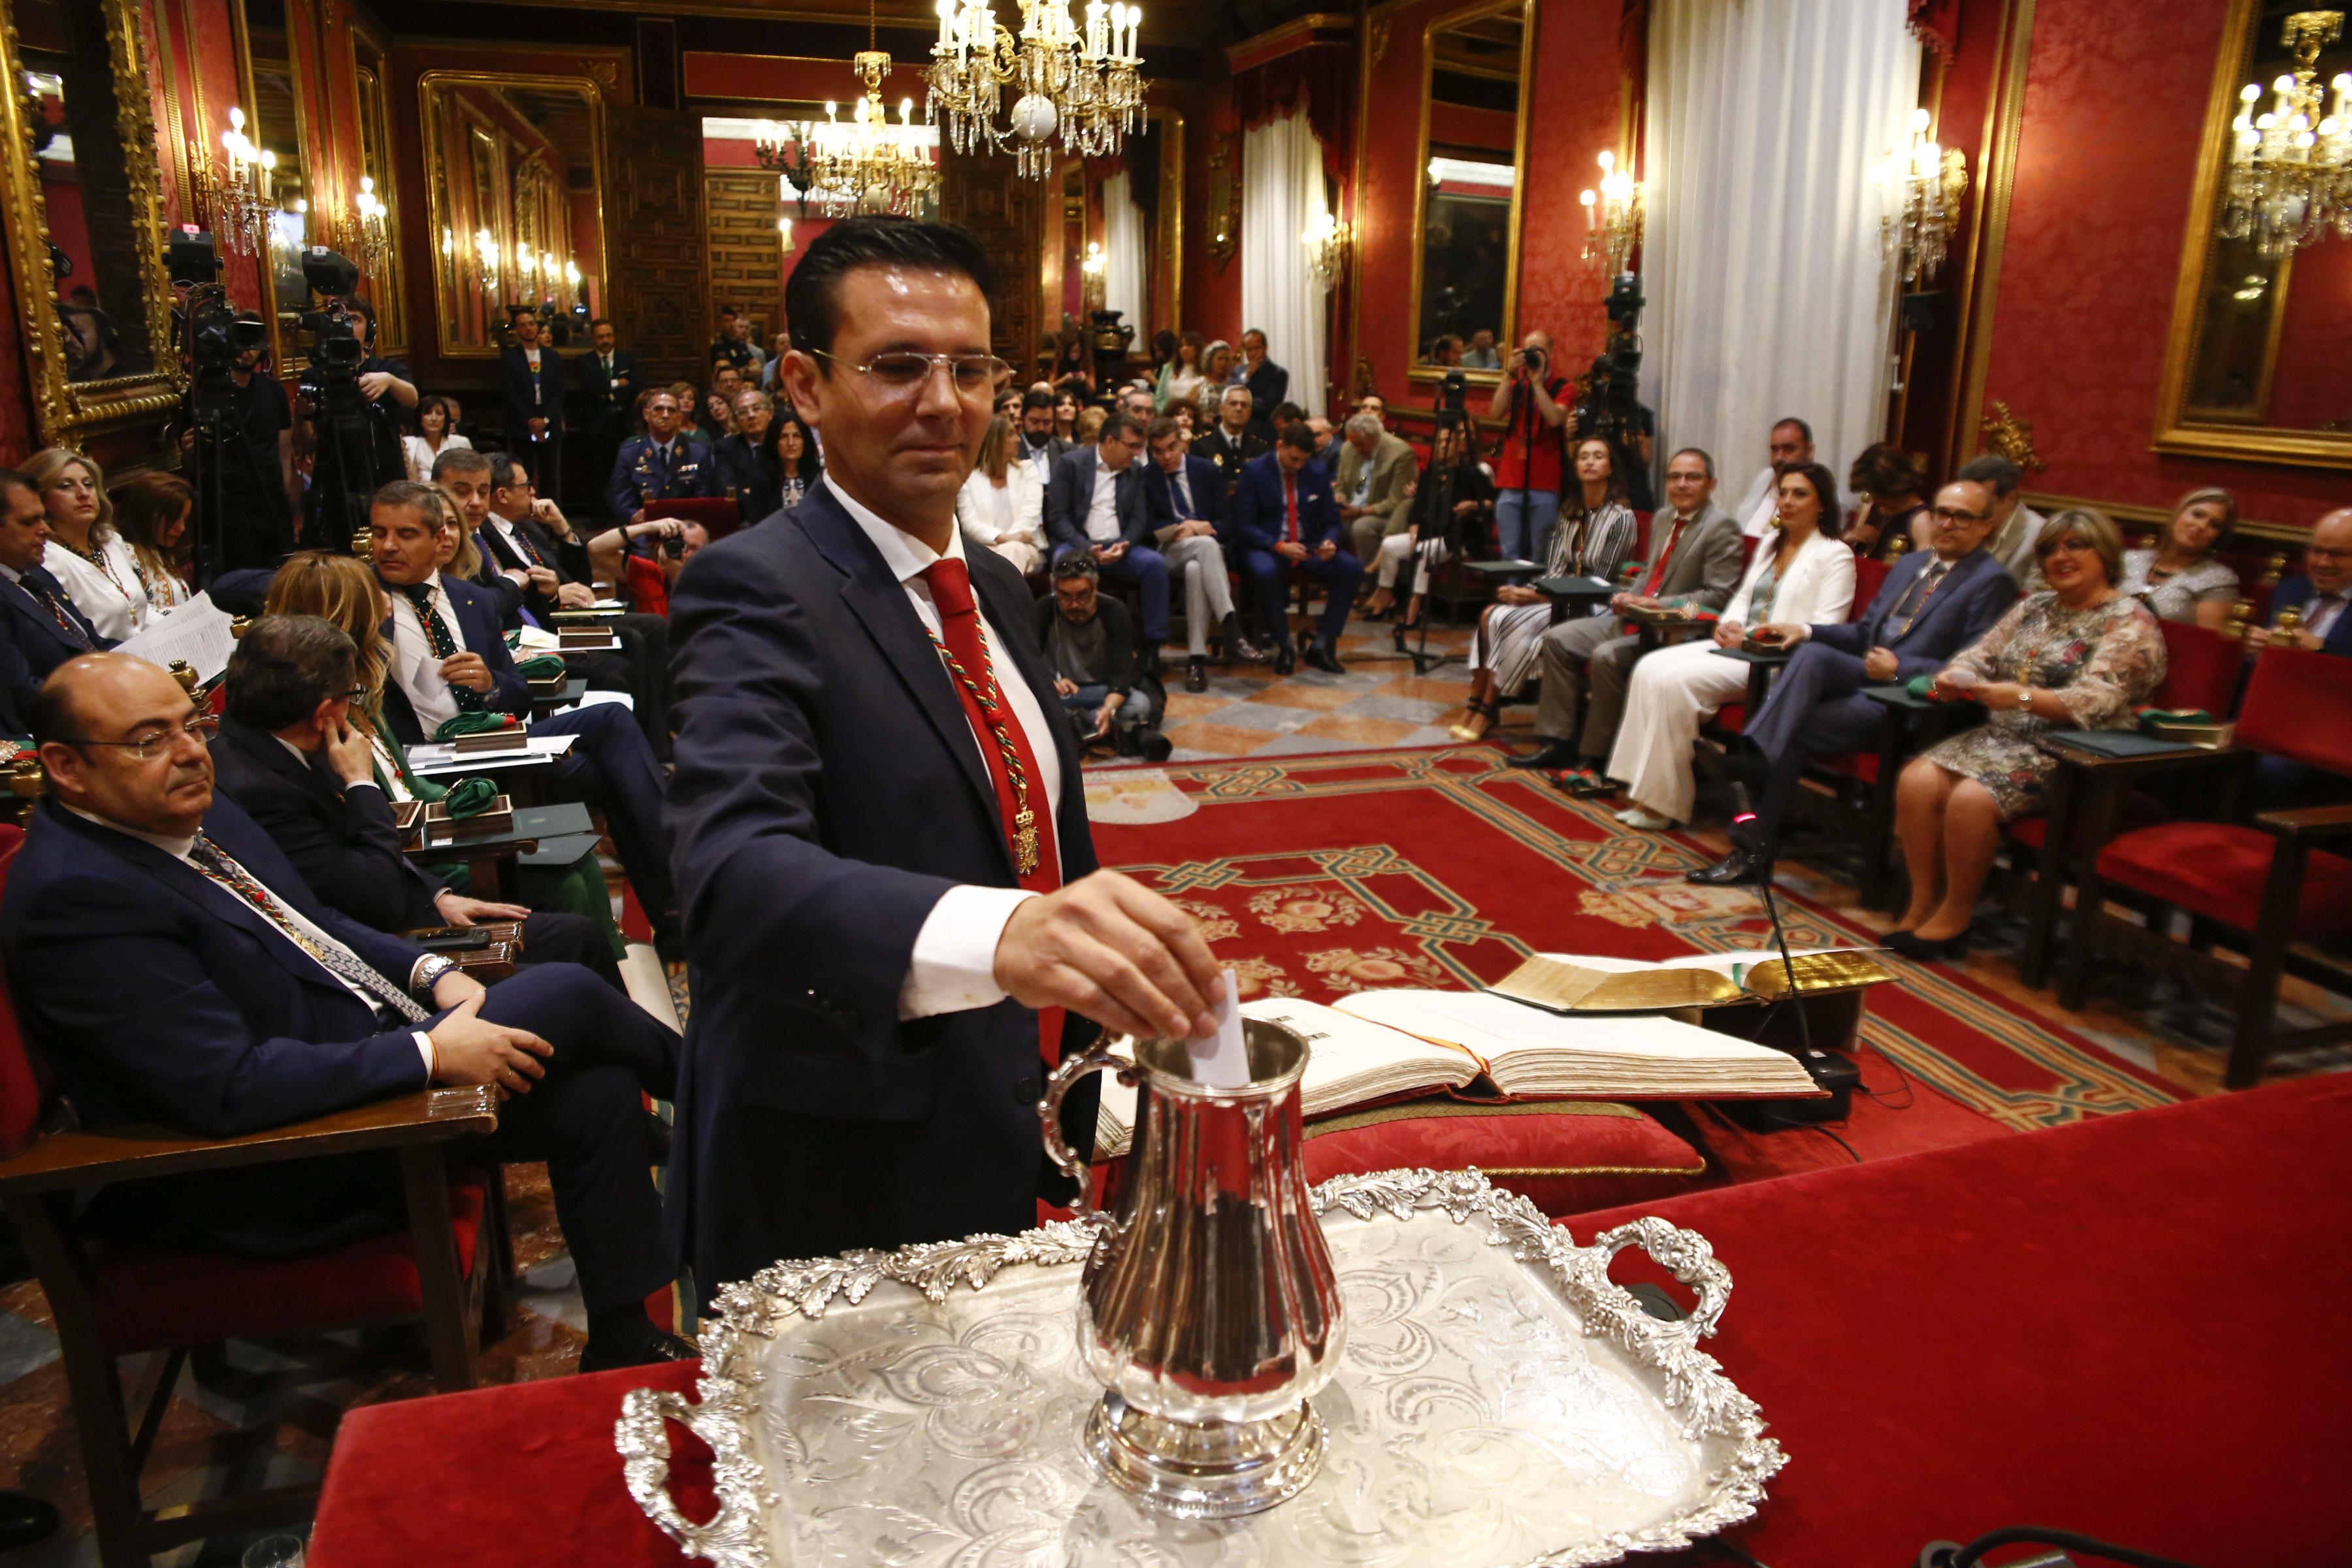 El nuevo alcalde de Granada, Luis Salvador (Ciudadanos). Fuente: Europa Press.